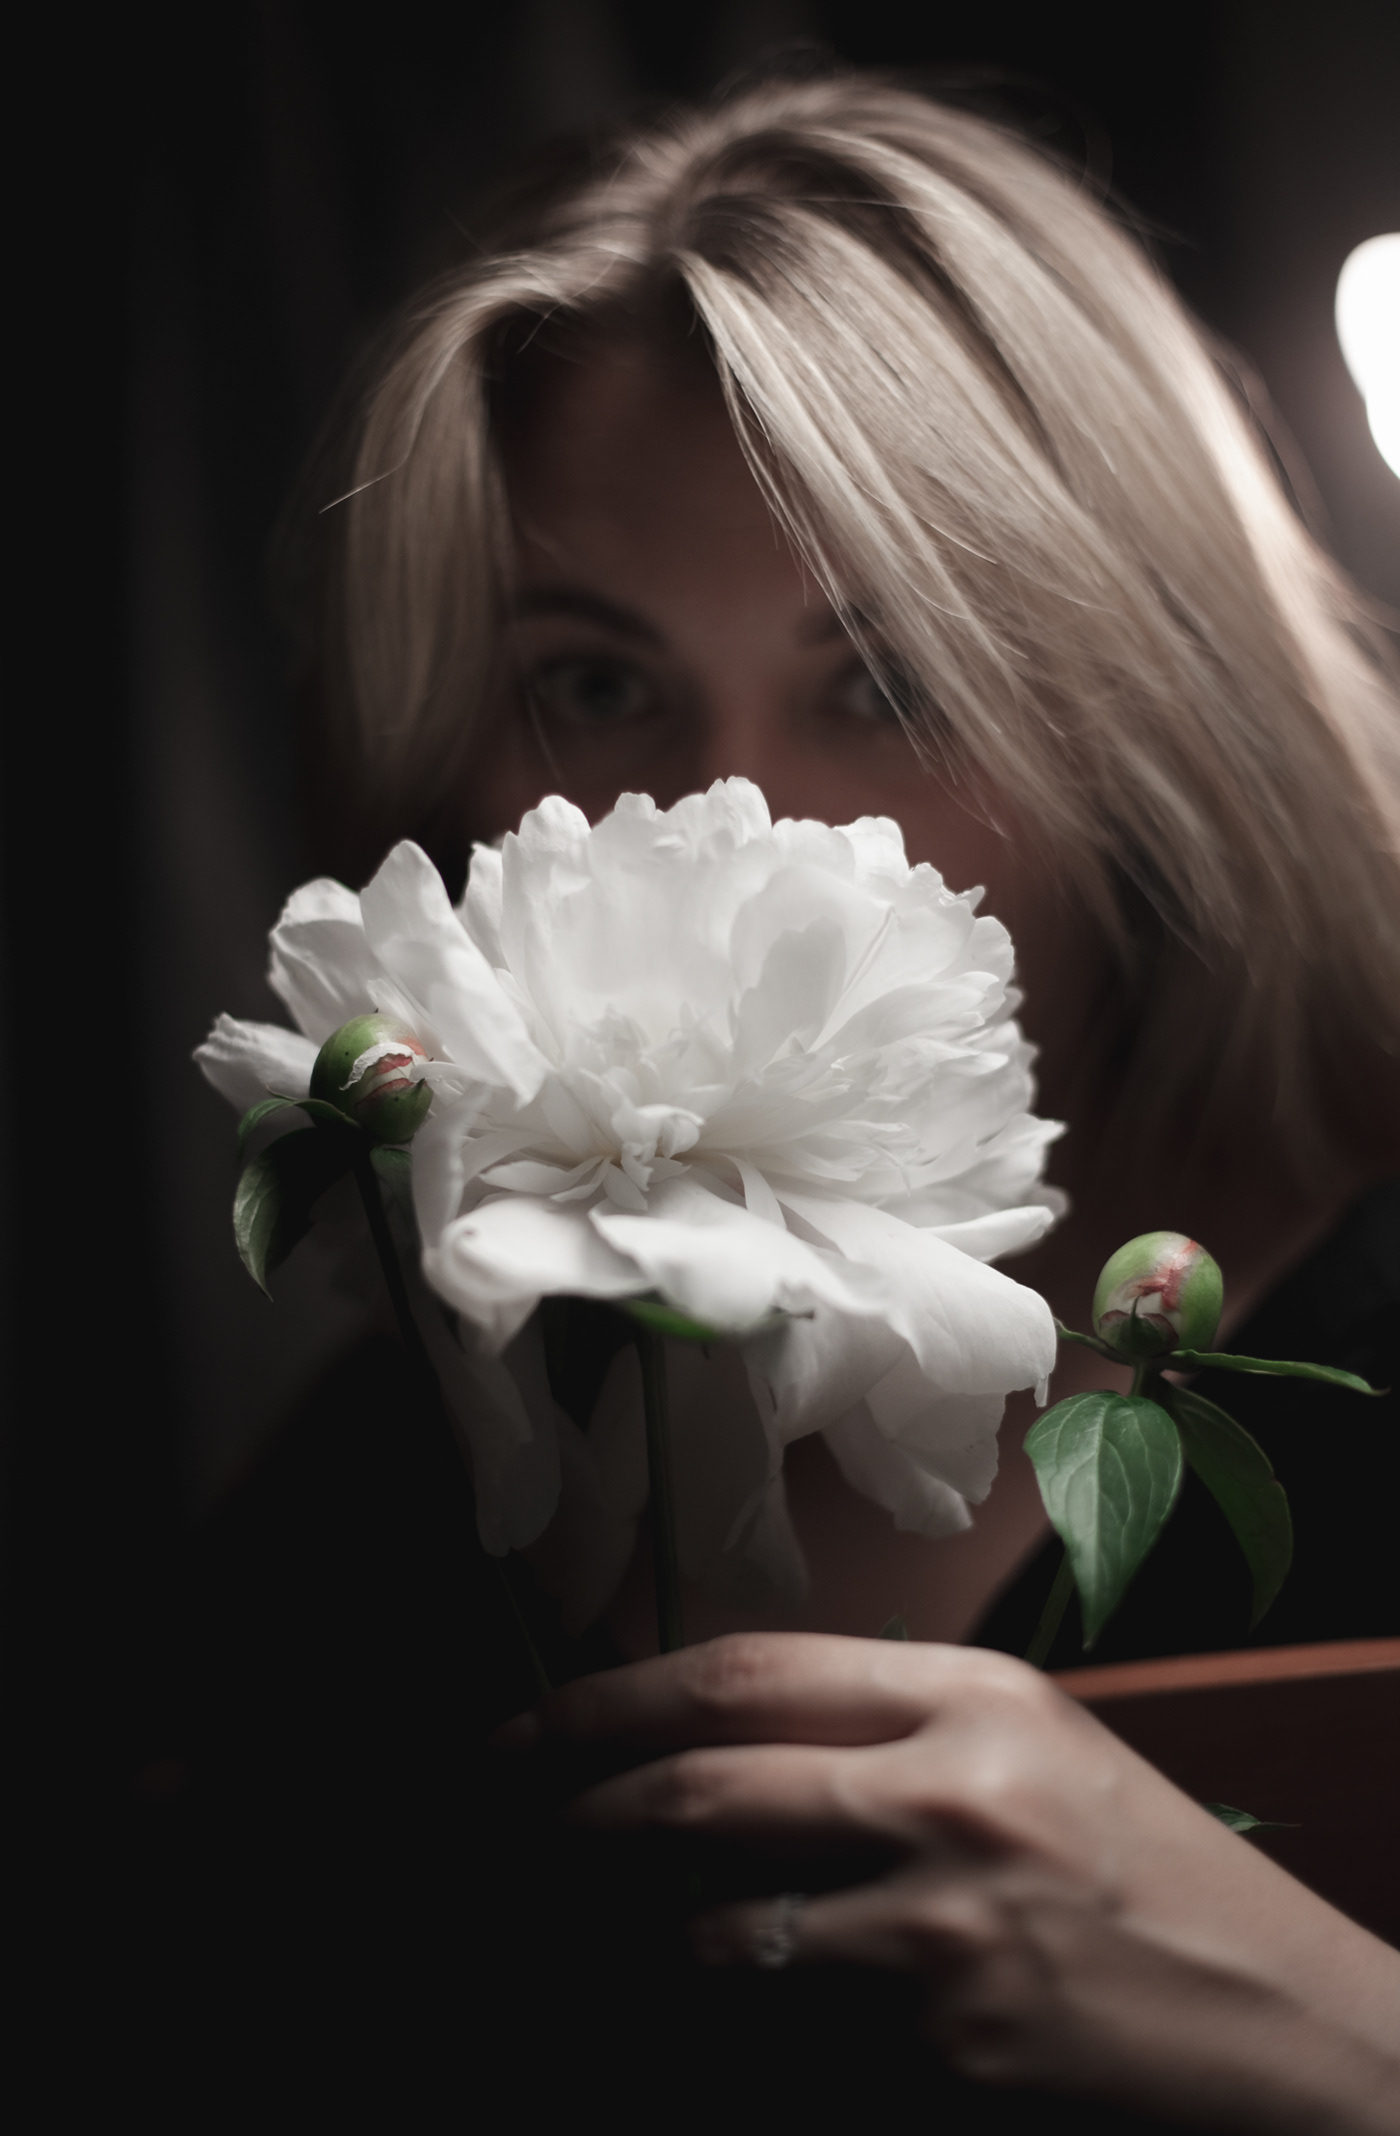 blonde blur dark Flowers girl Nature peonies people White